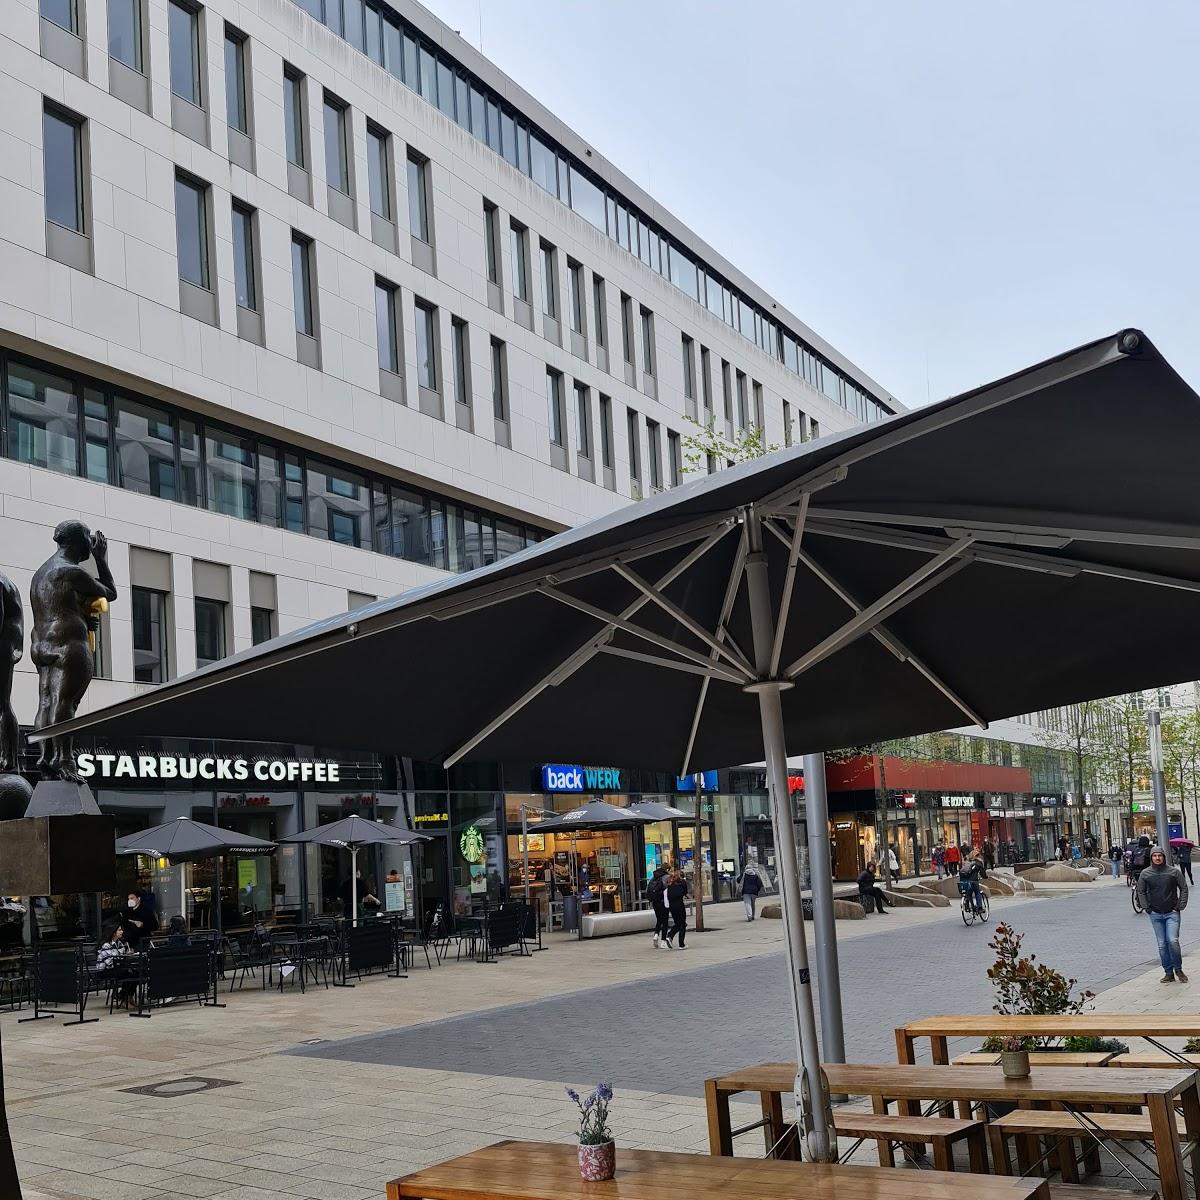 Restaurant "Starbucks" in Leipzig